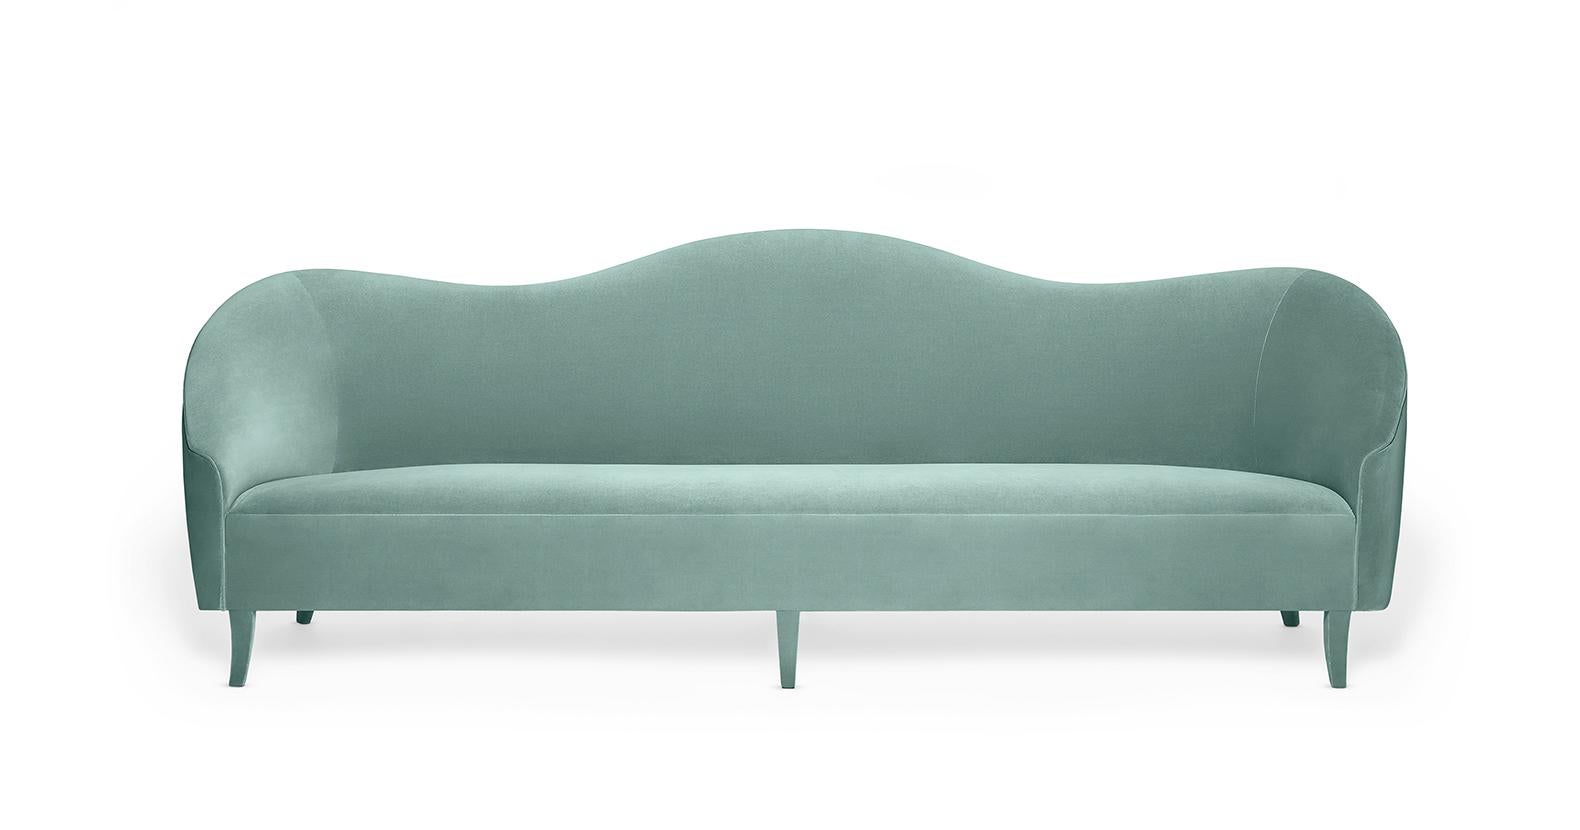 Dieses Sofa atmet das Erbe, indem es die Kurven und Silhouetten von Epochen mit unvergleichlicher Eleganz aufgreift. Die schlanken, geschwungenen Linien, die herrliche und gemütliche hohe Rückenlehne und die perfekt proportionierte Sitzfläche machen